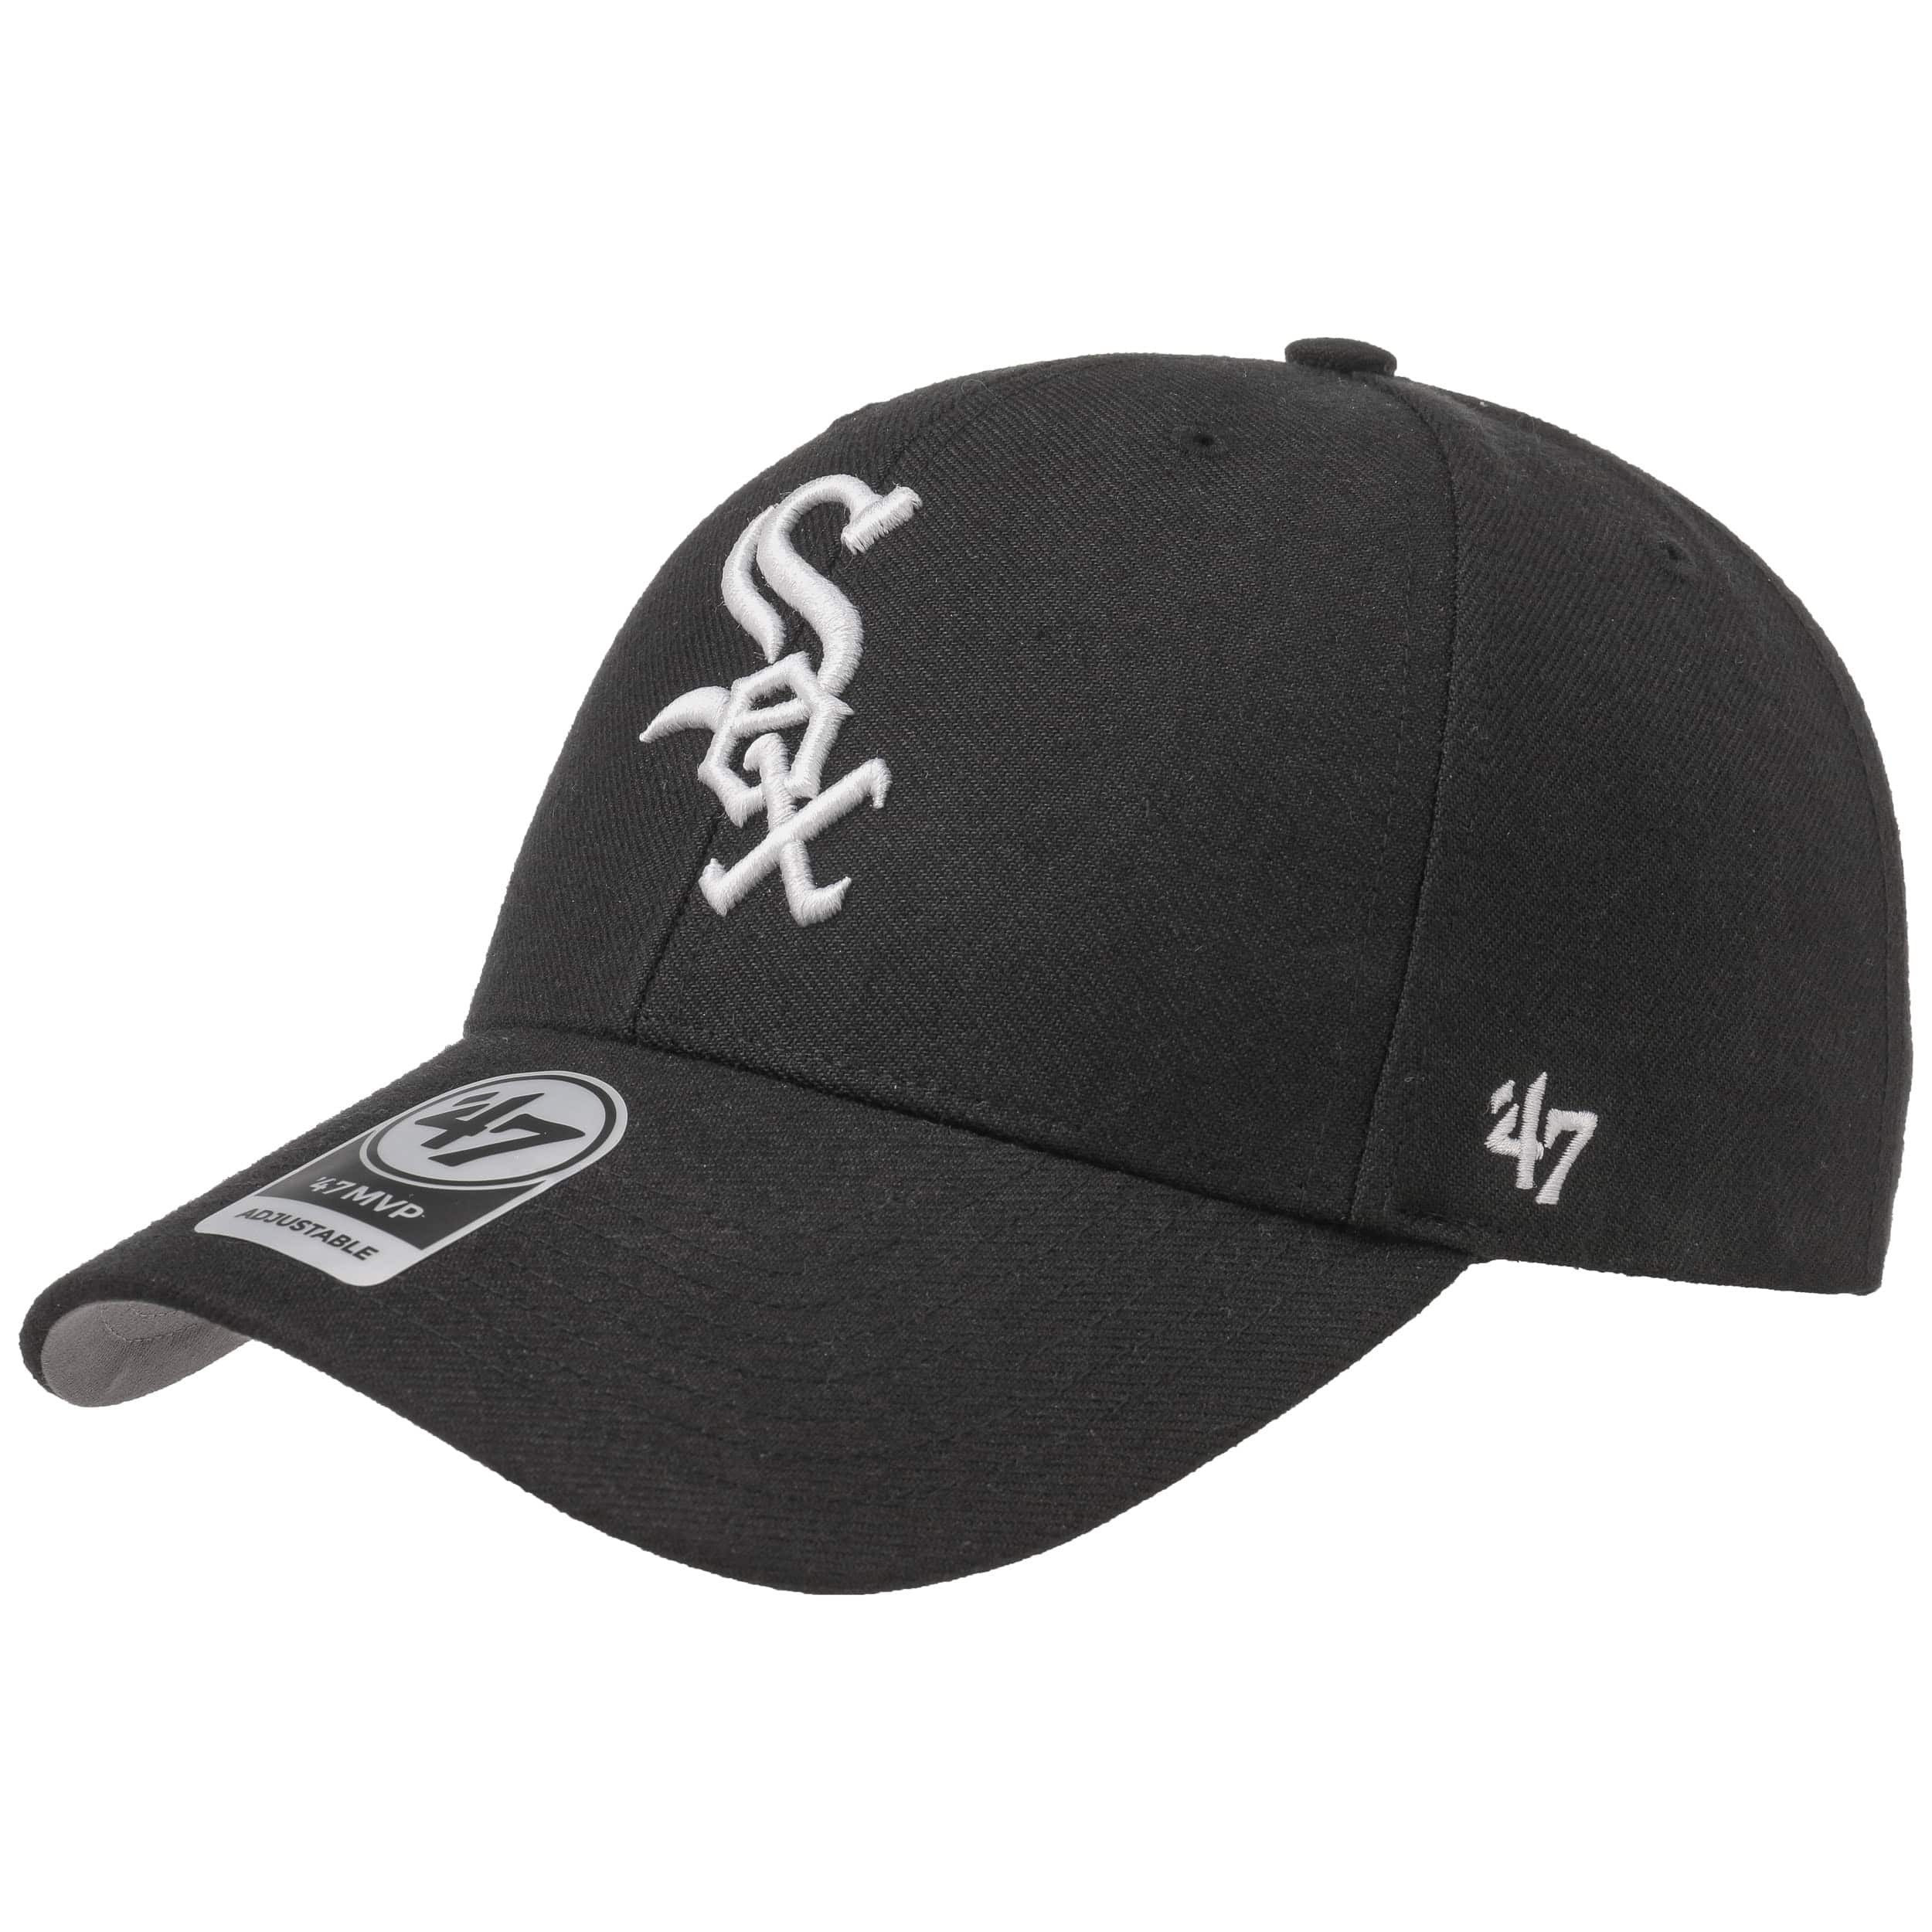 Sox Cap